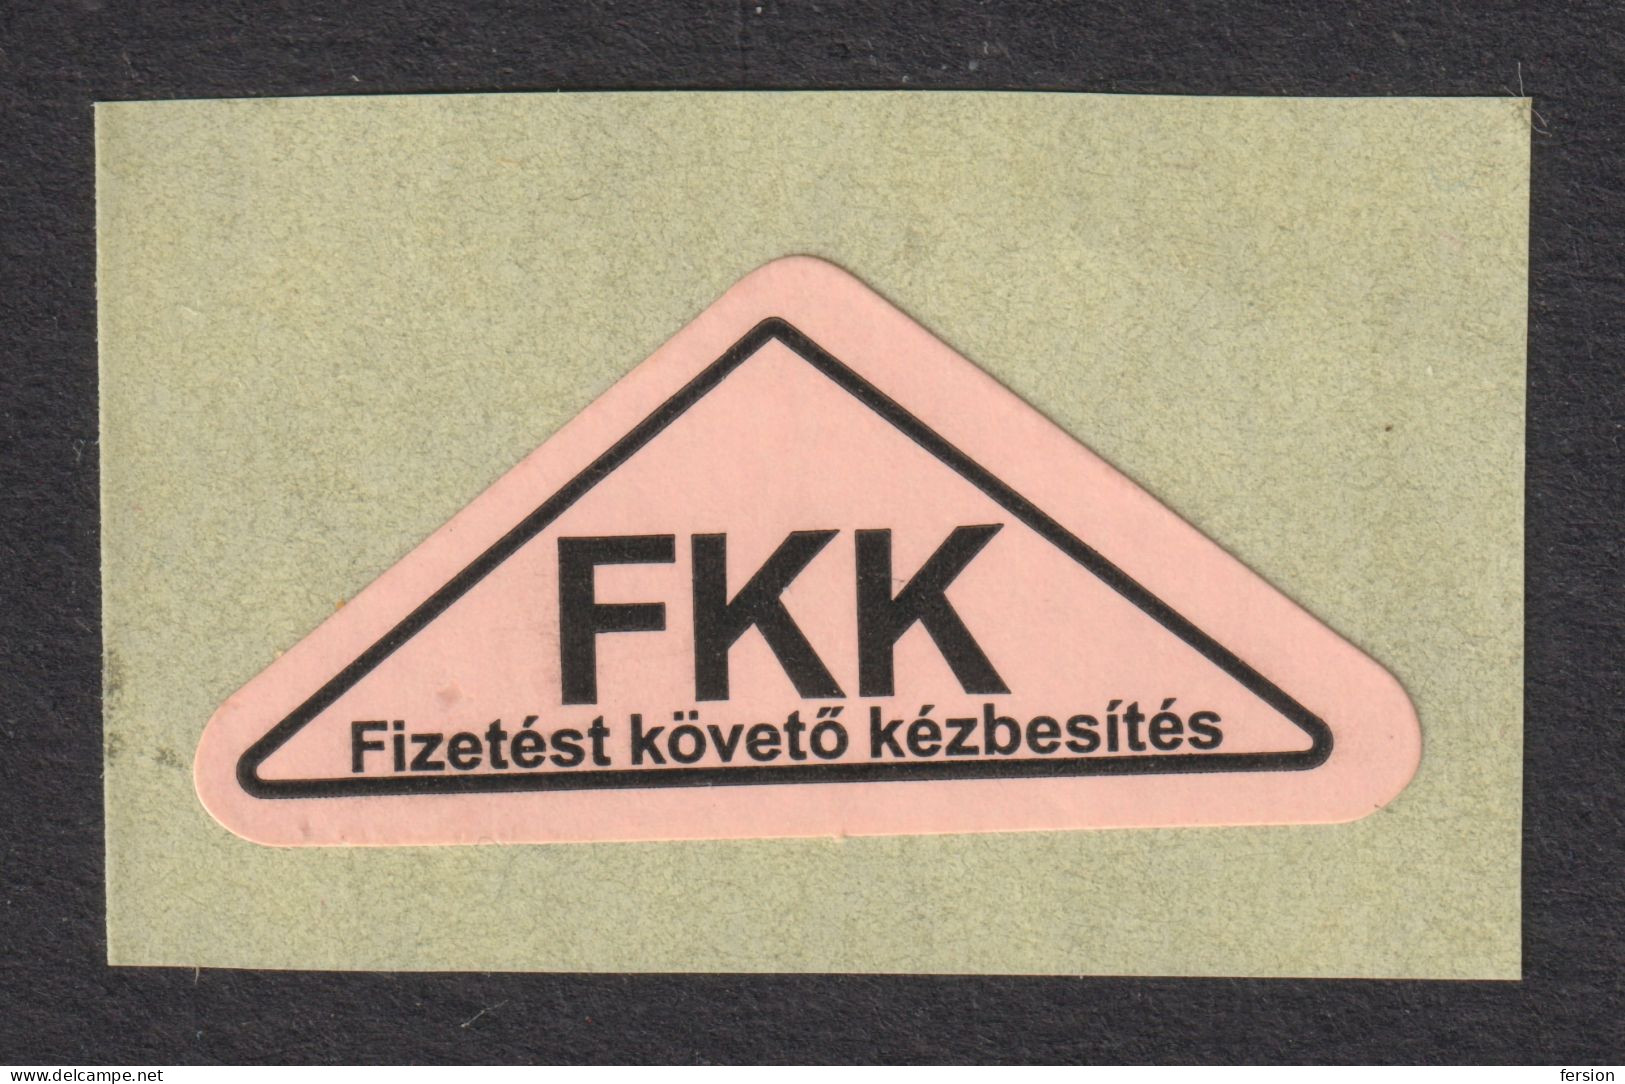 Postal LABEL - Delivery After Payment " Remboursement " FKK - Self Adhesive Vignette Label - 2013 Hungary - MNH - Viñetas De Franqueo [ATM]